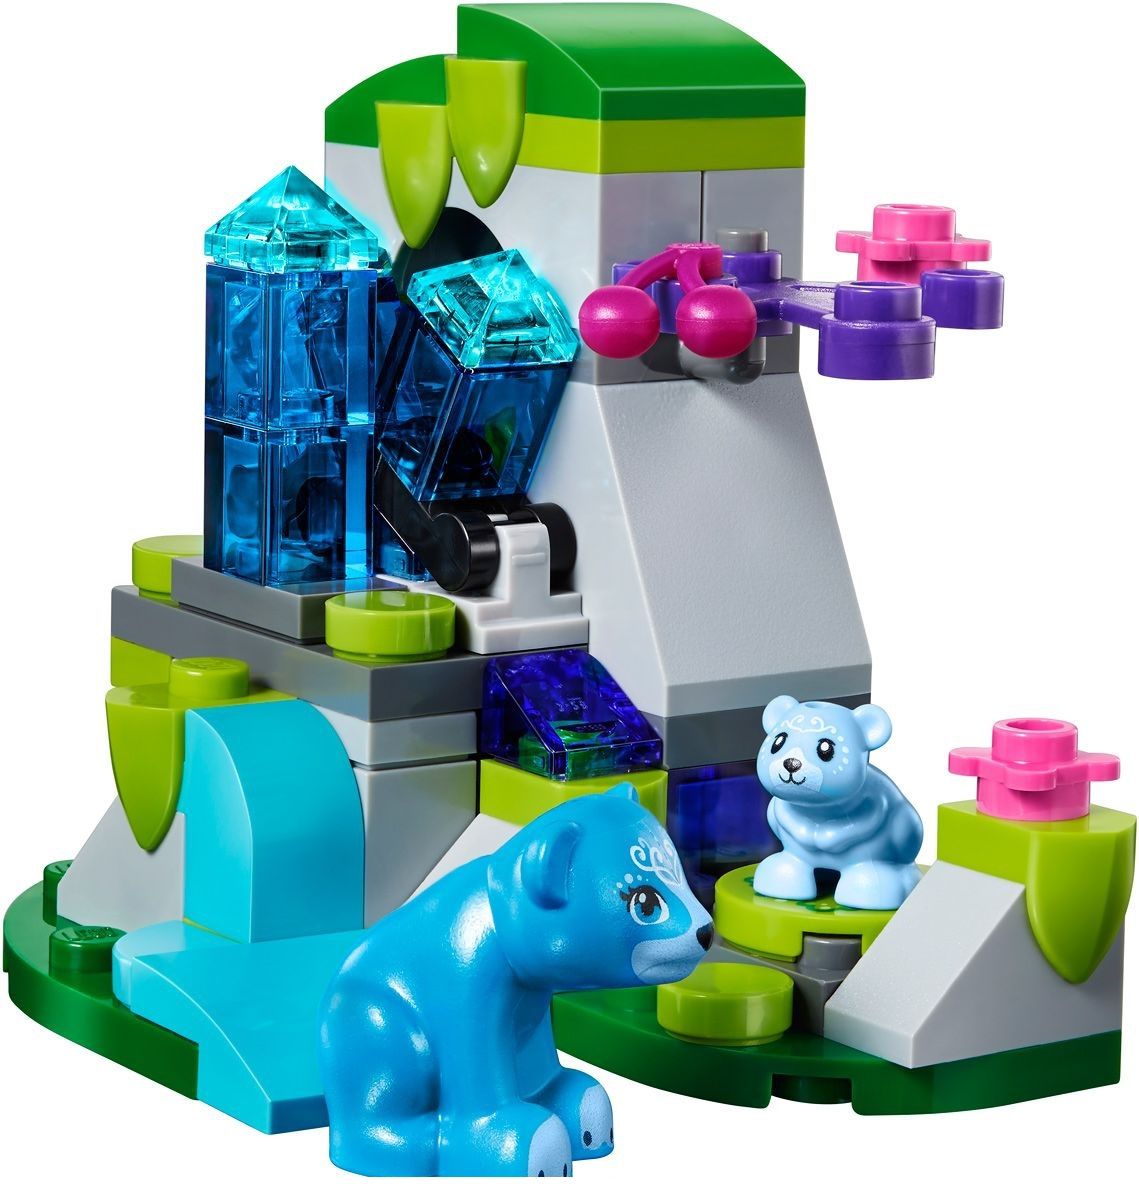 Lego Конструктор Elves "Дракон короля Гоблинов" 339 деталей